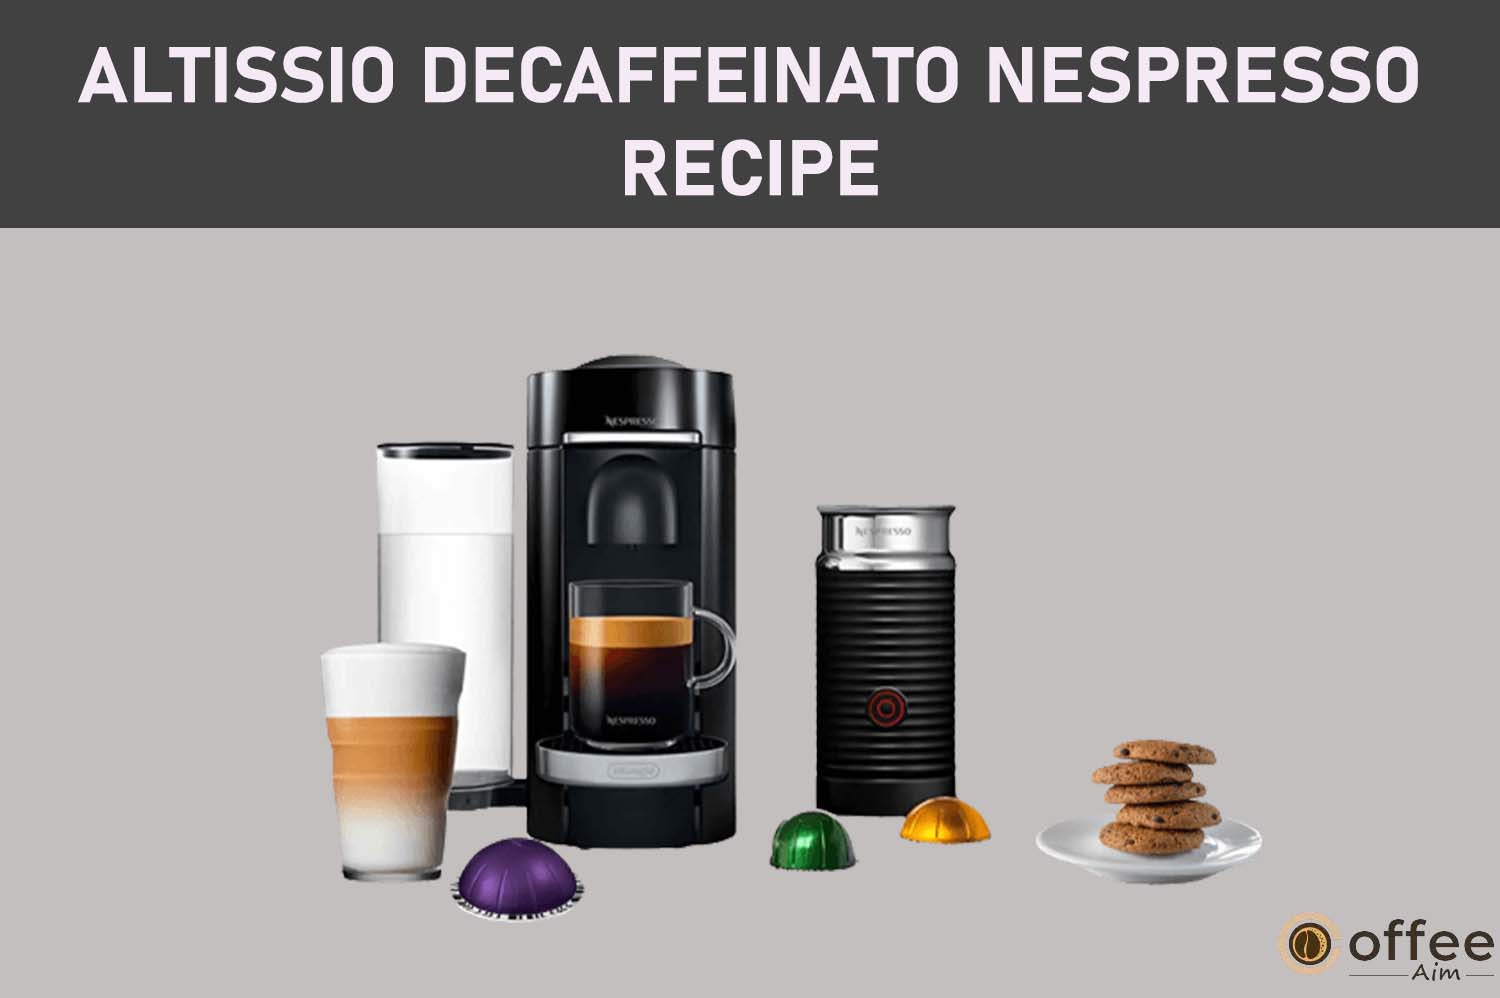 Featured image for the article "Altissio Decaffeinato Nespresso Recipe"